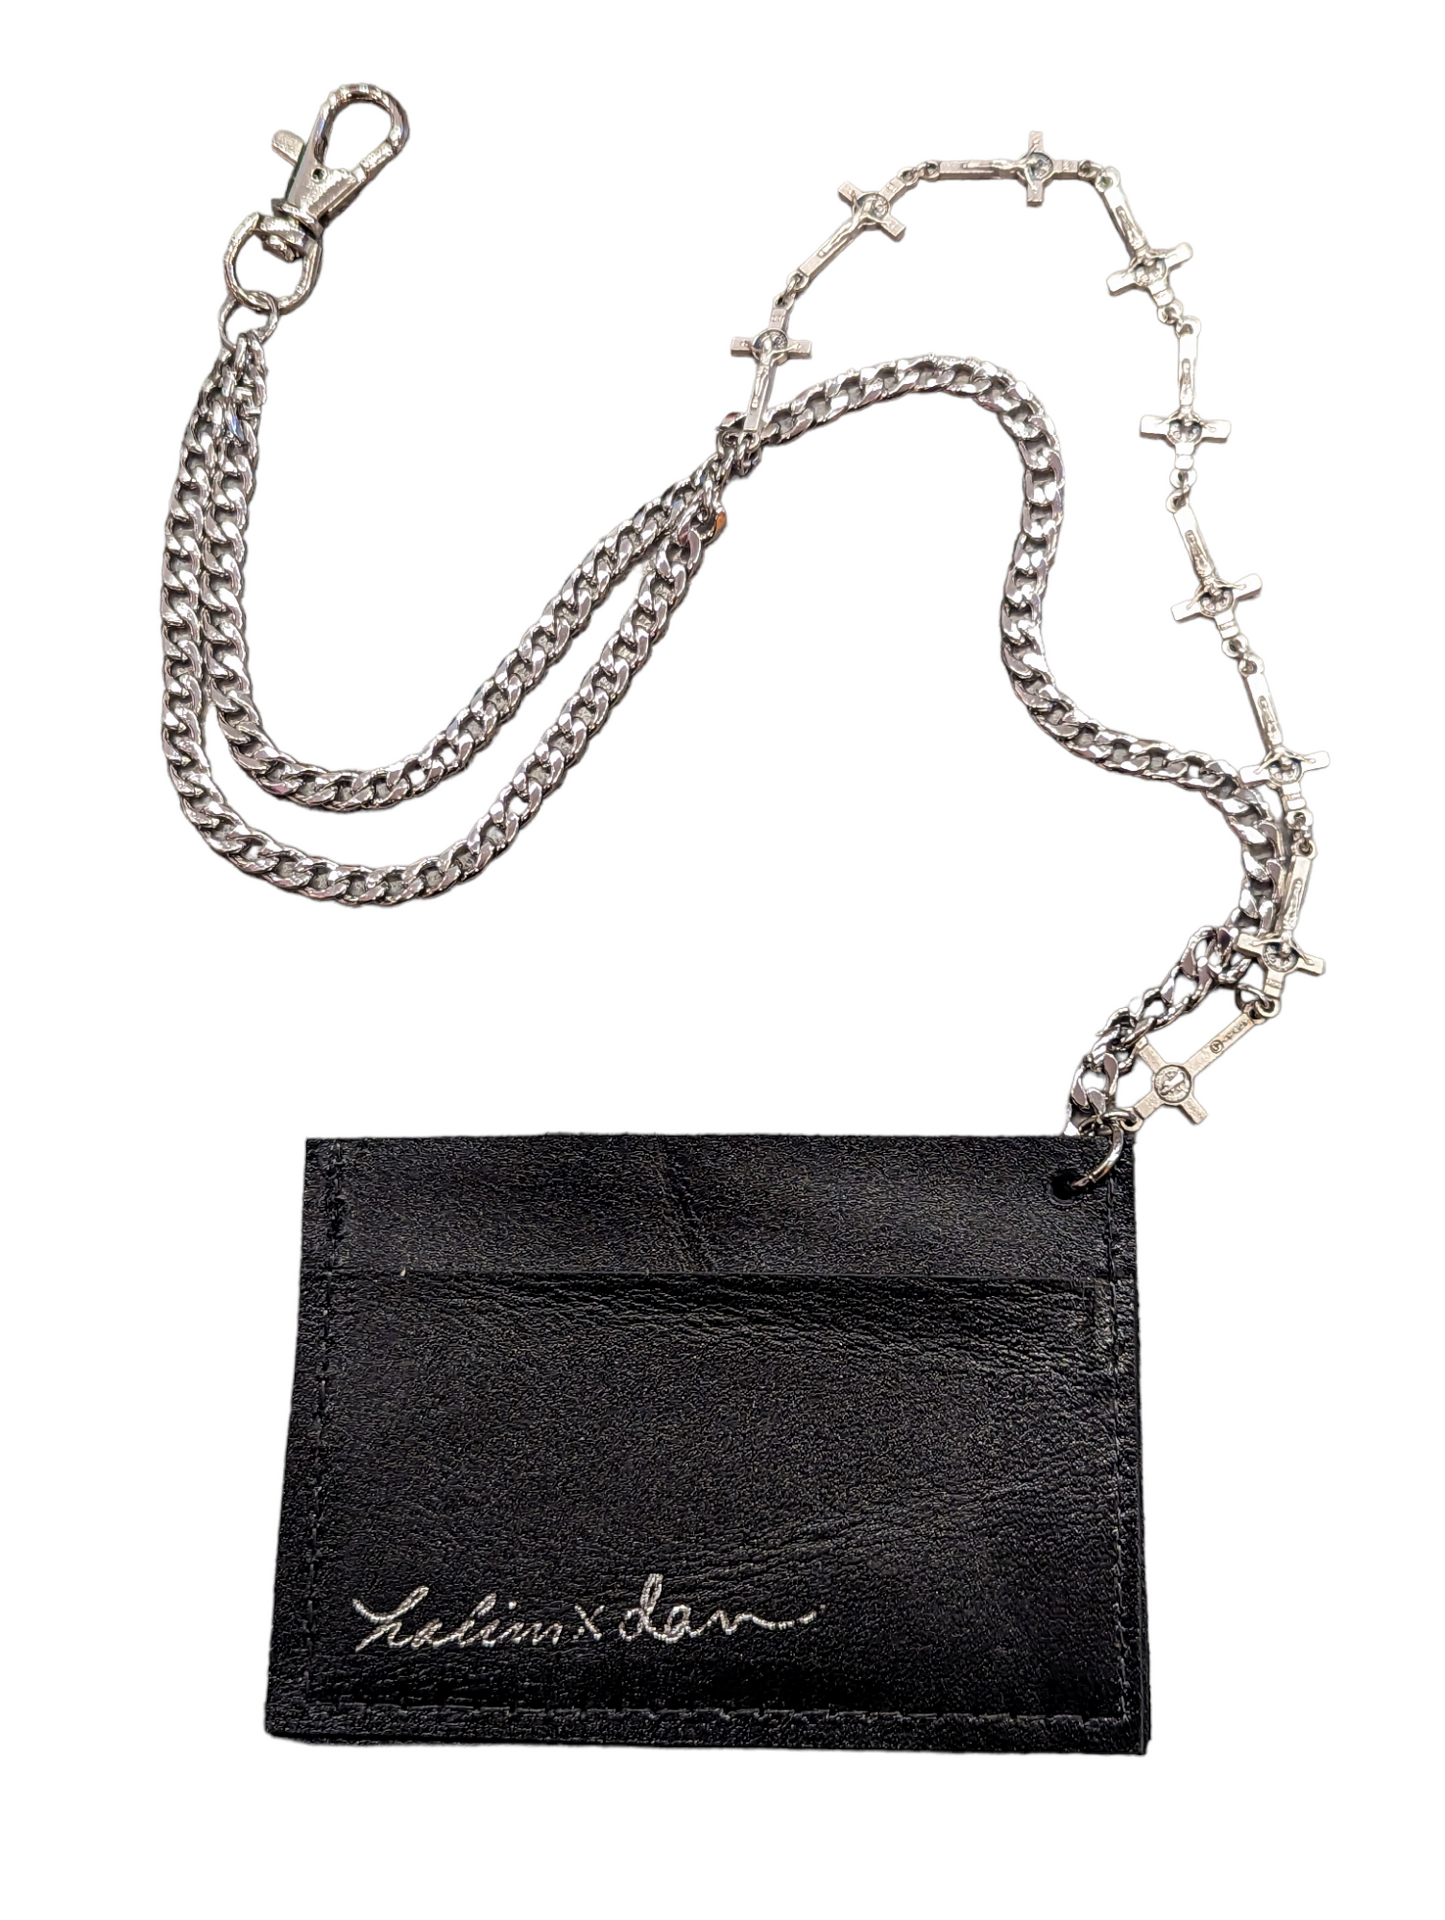 Handmade Chain & Leather Wallet by Dan McLean x Halim